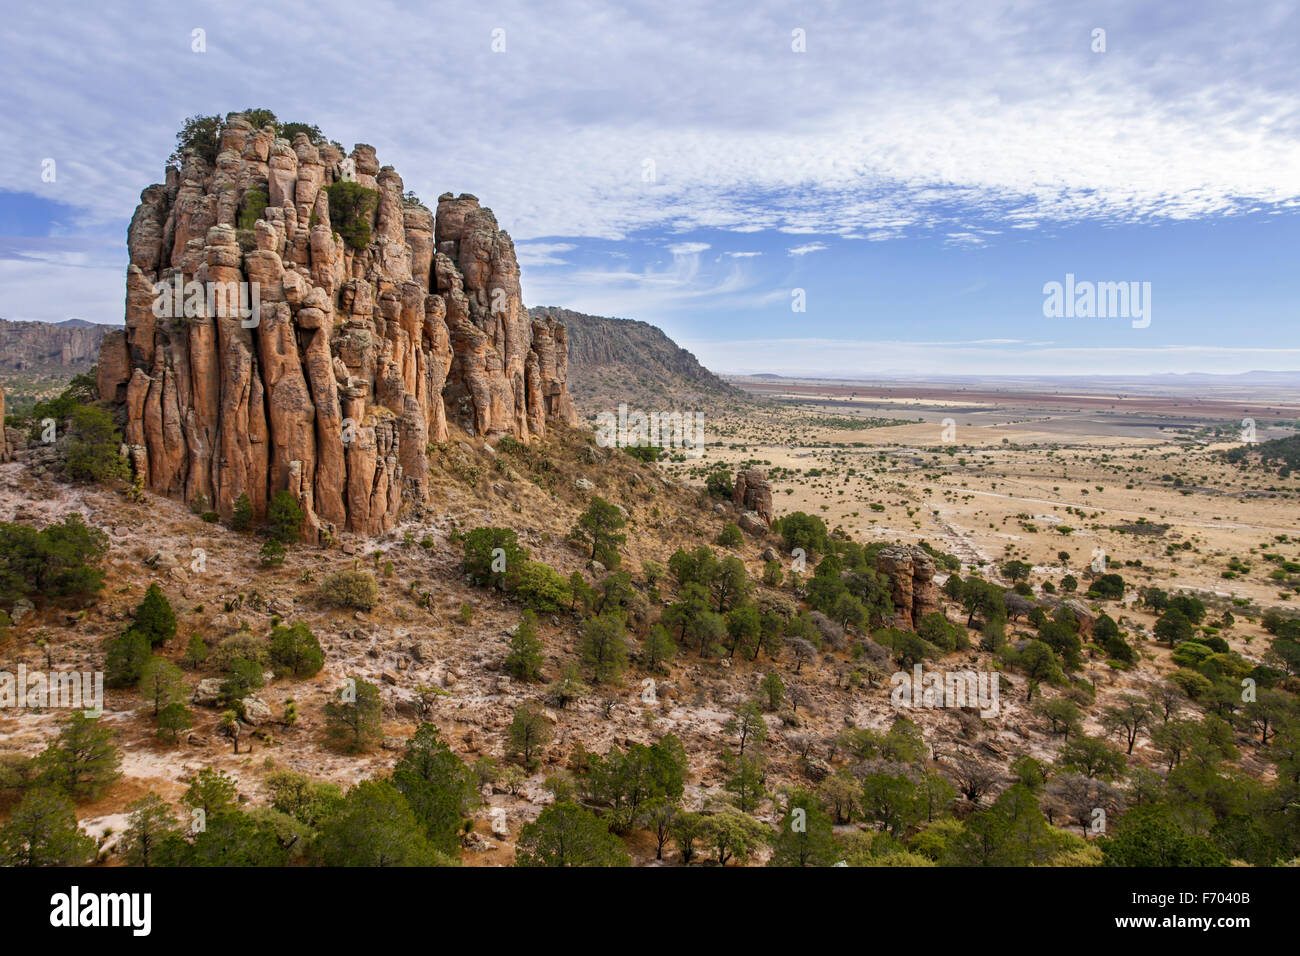 Sierra de Organos s'élève depuis les plaines de l'ouest de Zacatecas, au Mexique. Banque D'Images